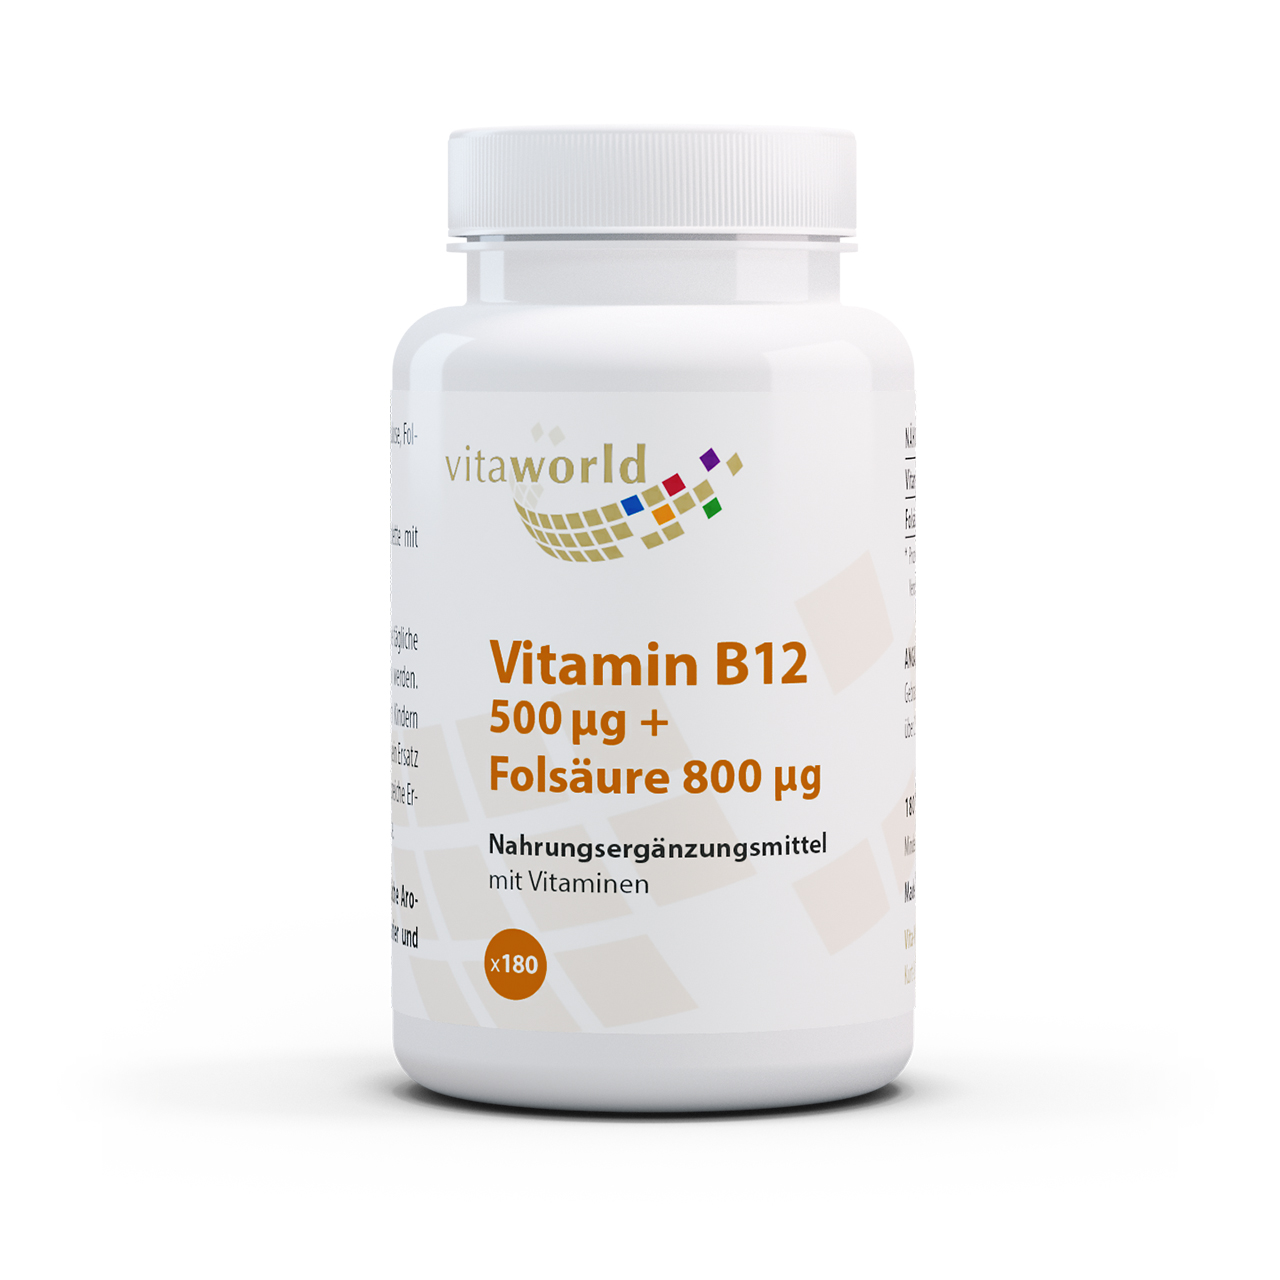 Vita World Vitamin B12 500 µg + Folsäure 800 µg | 180 Tabletten | vegan | gluten- und laktosefrei